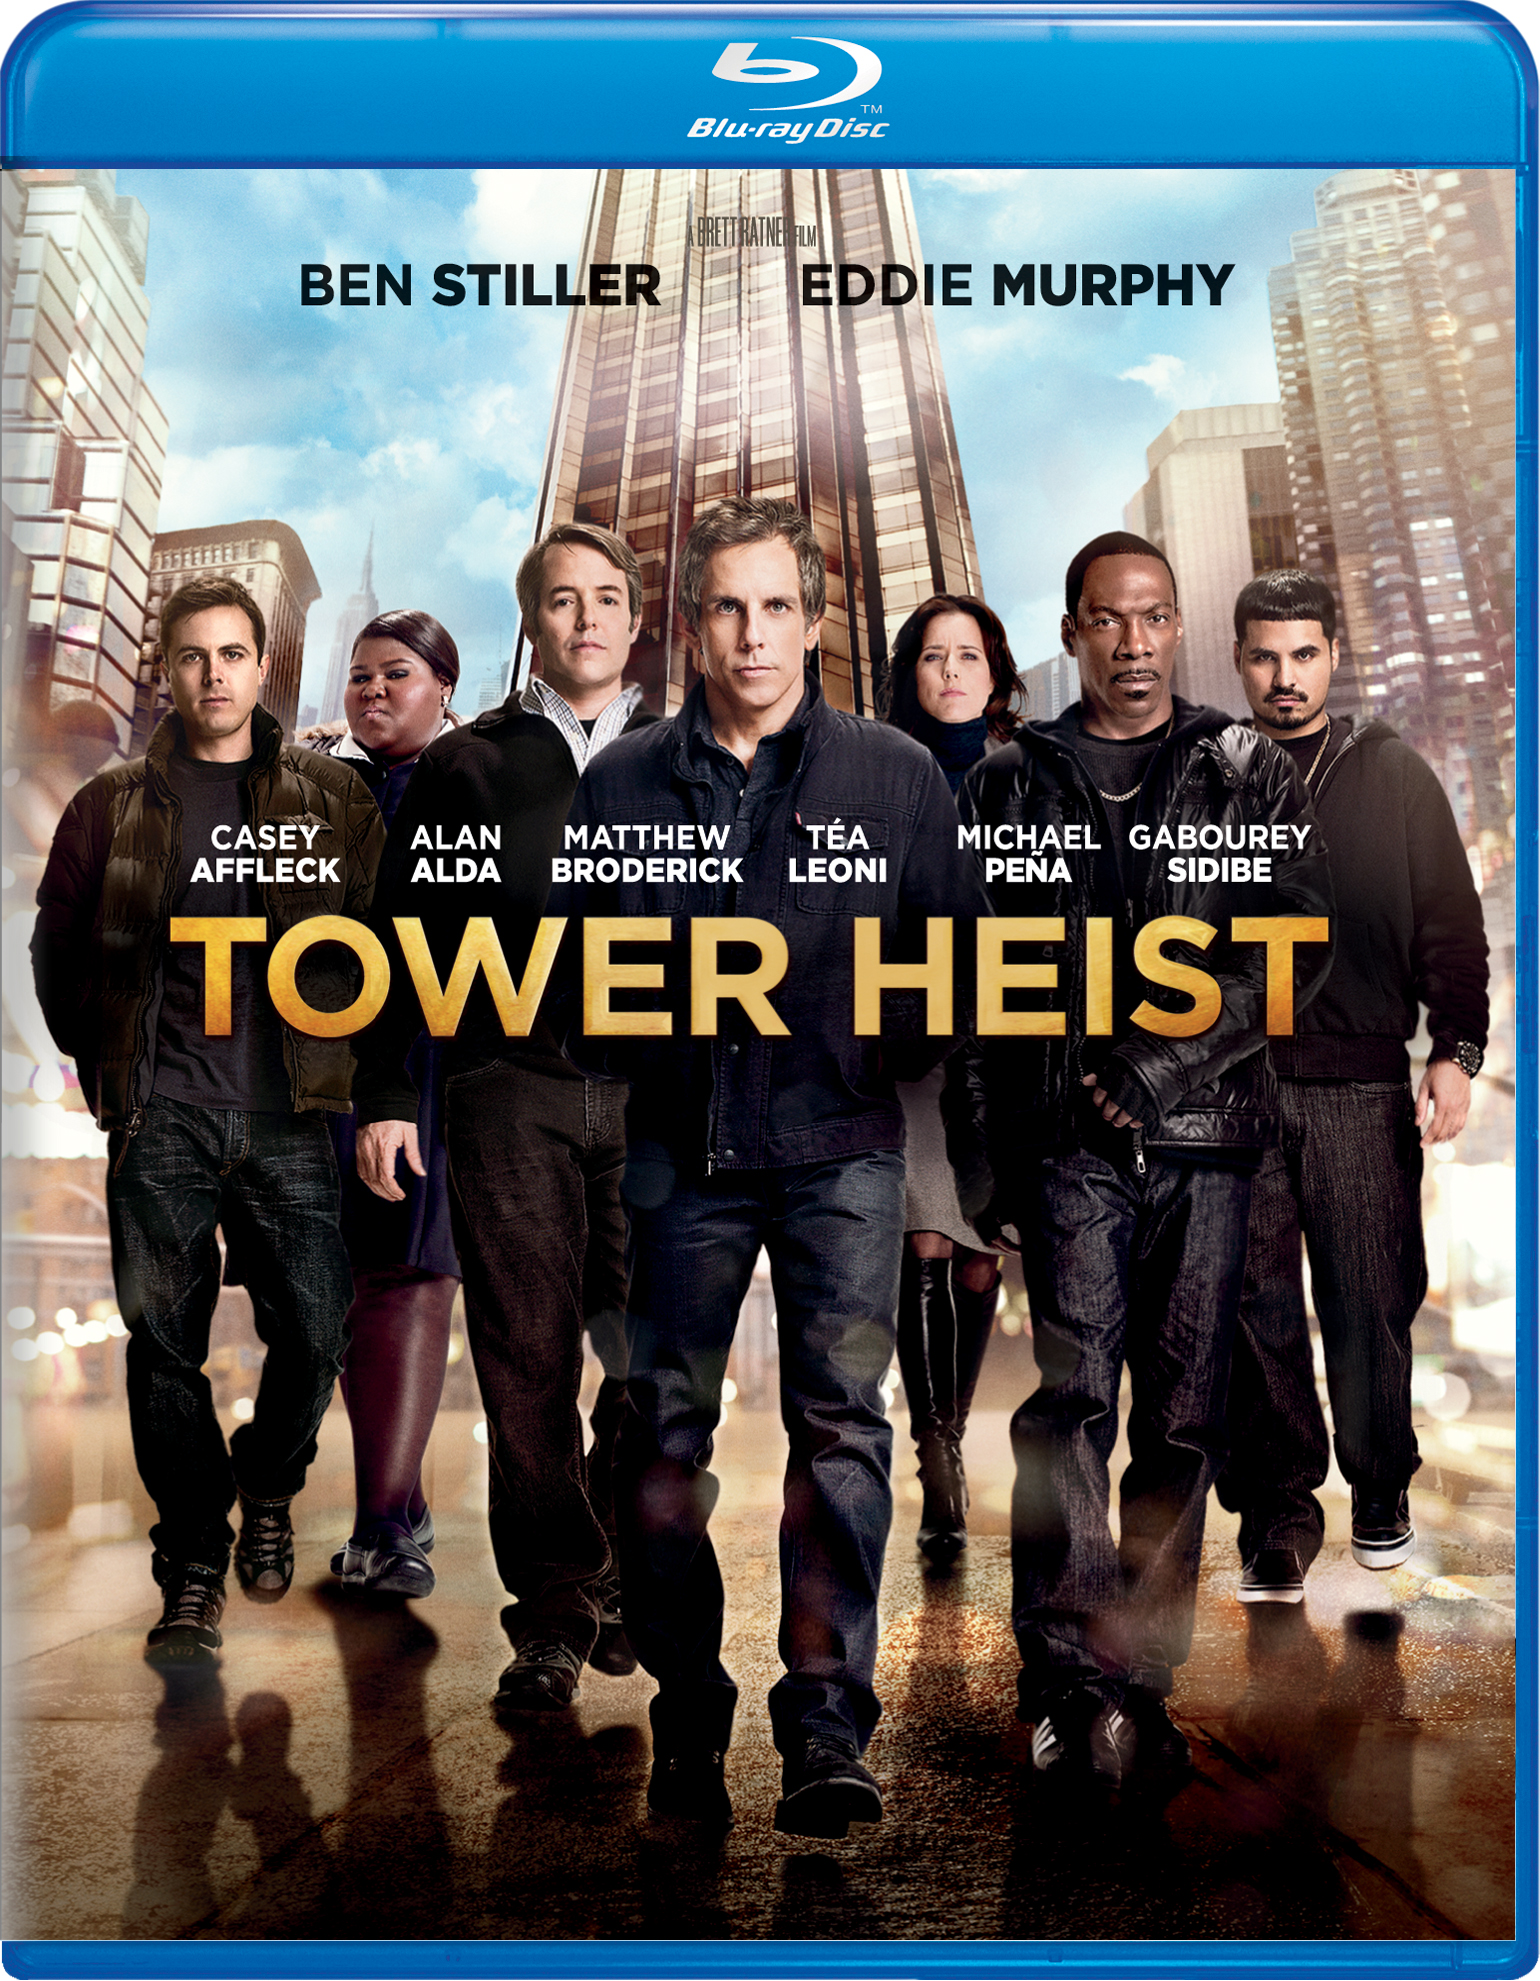 Tower Heist [Blu-ray] [2011] - Best Buy